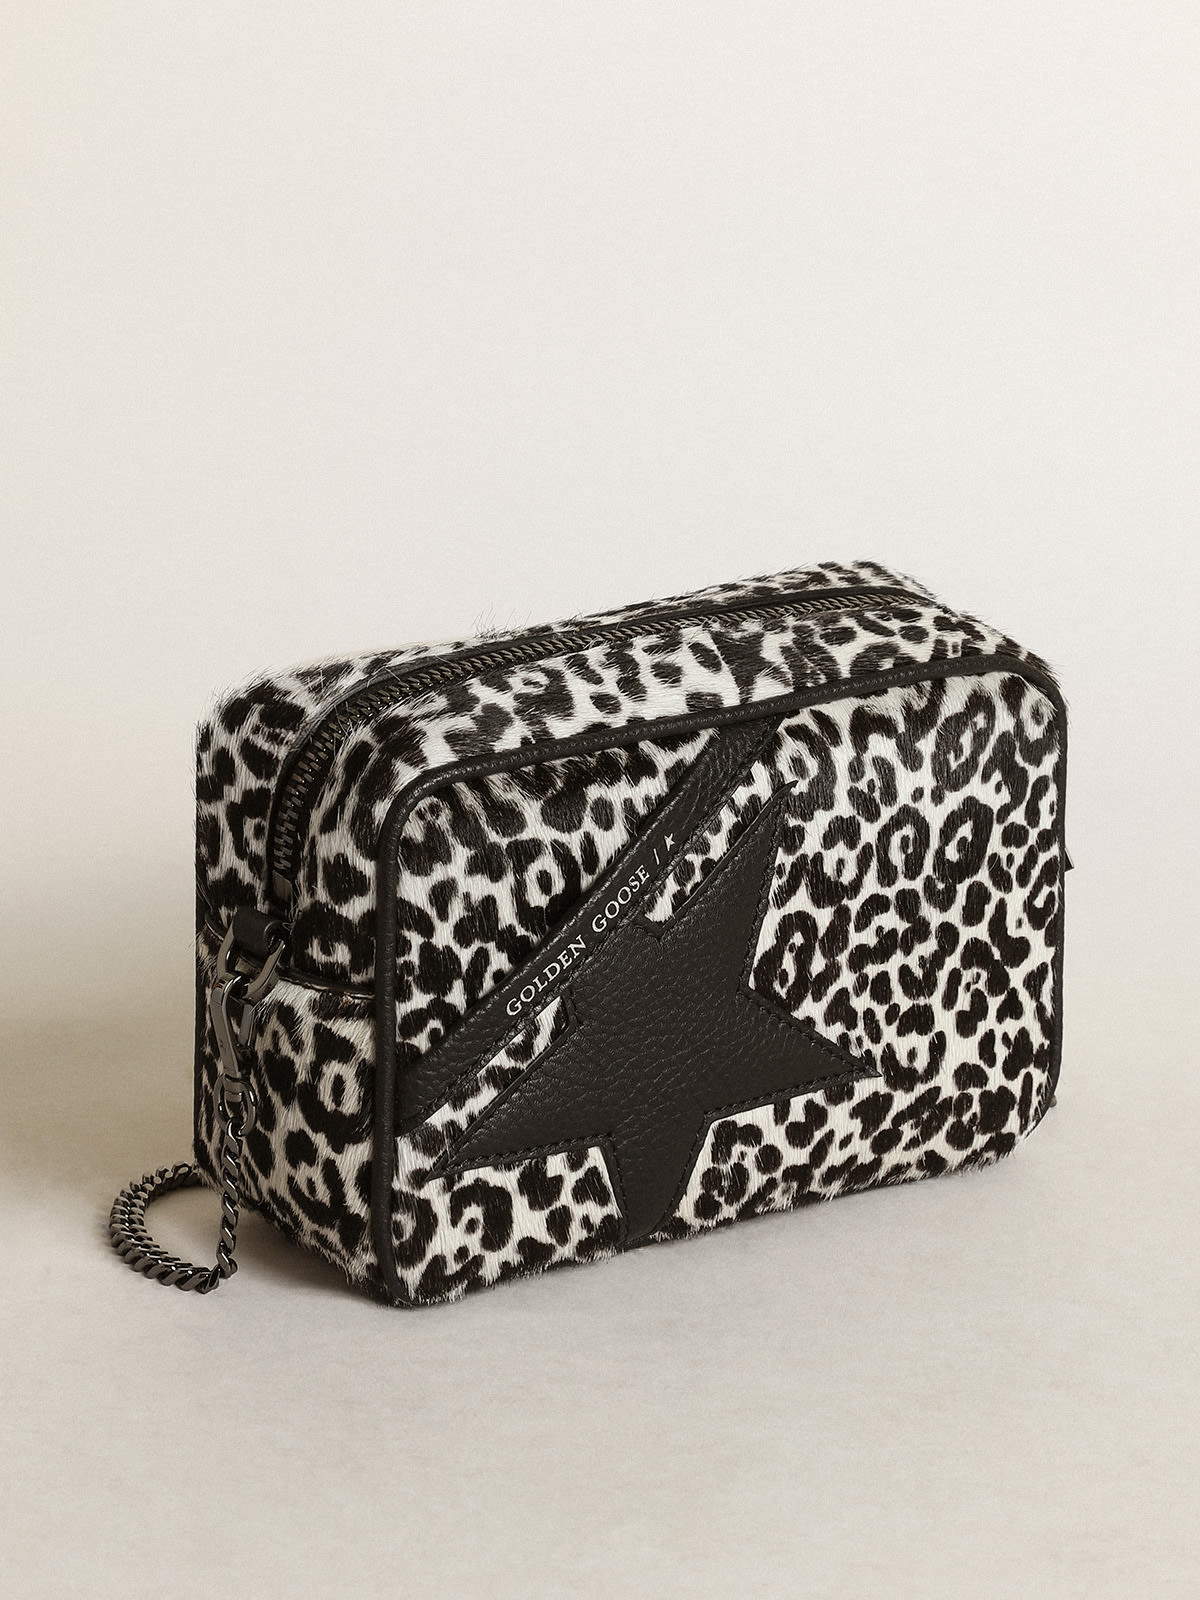 Golden Goose - Bolso Mini Star Bag de piel efecto potro con estampado leopardo color blanco y negro y estrella de piel negra in 